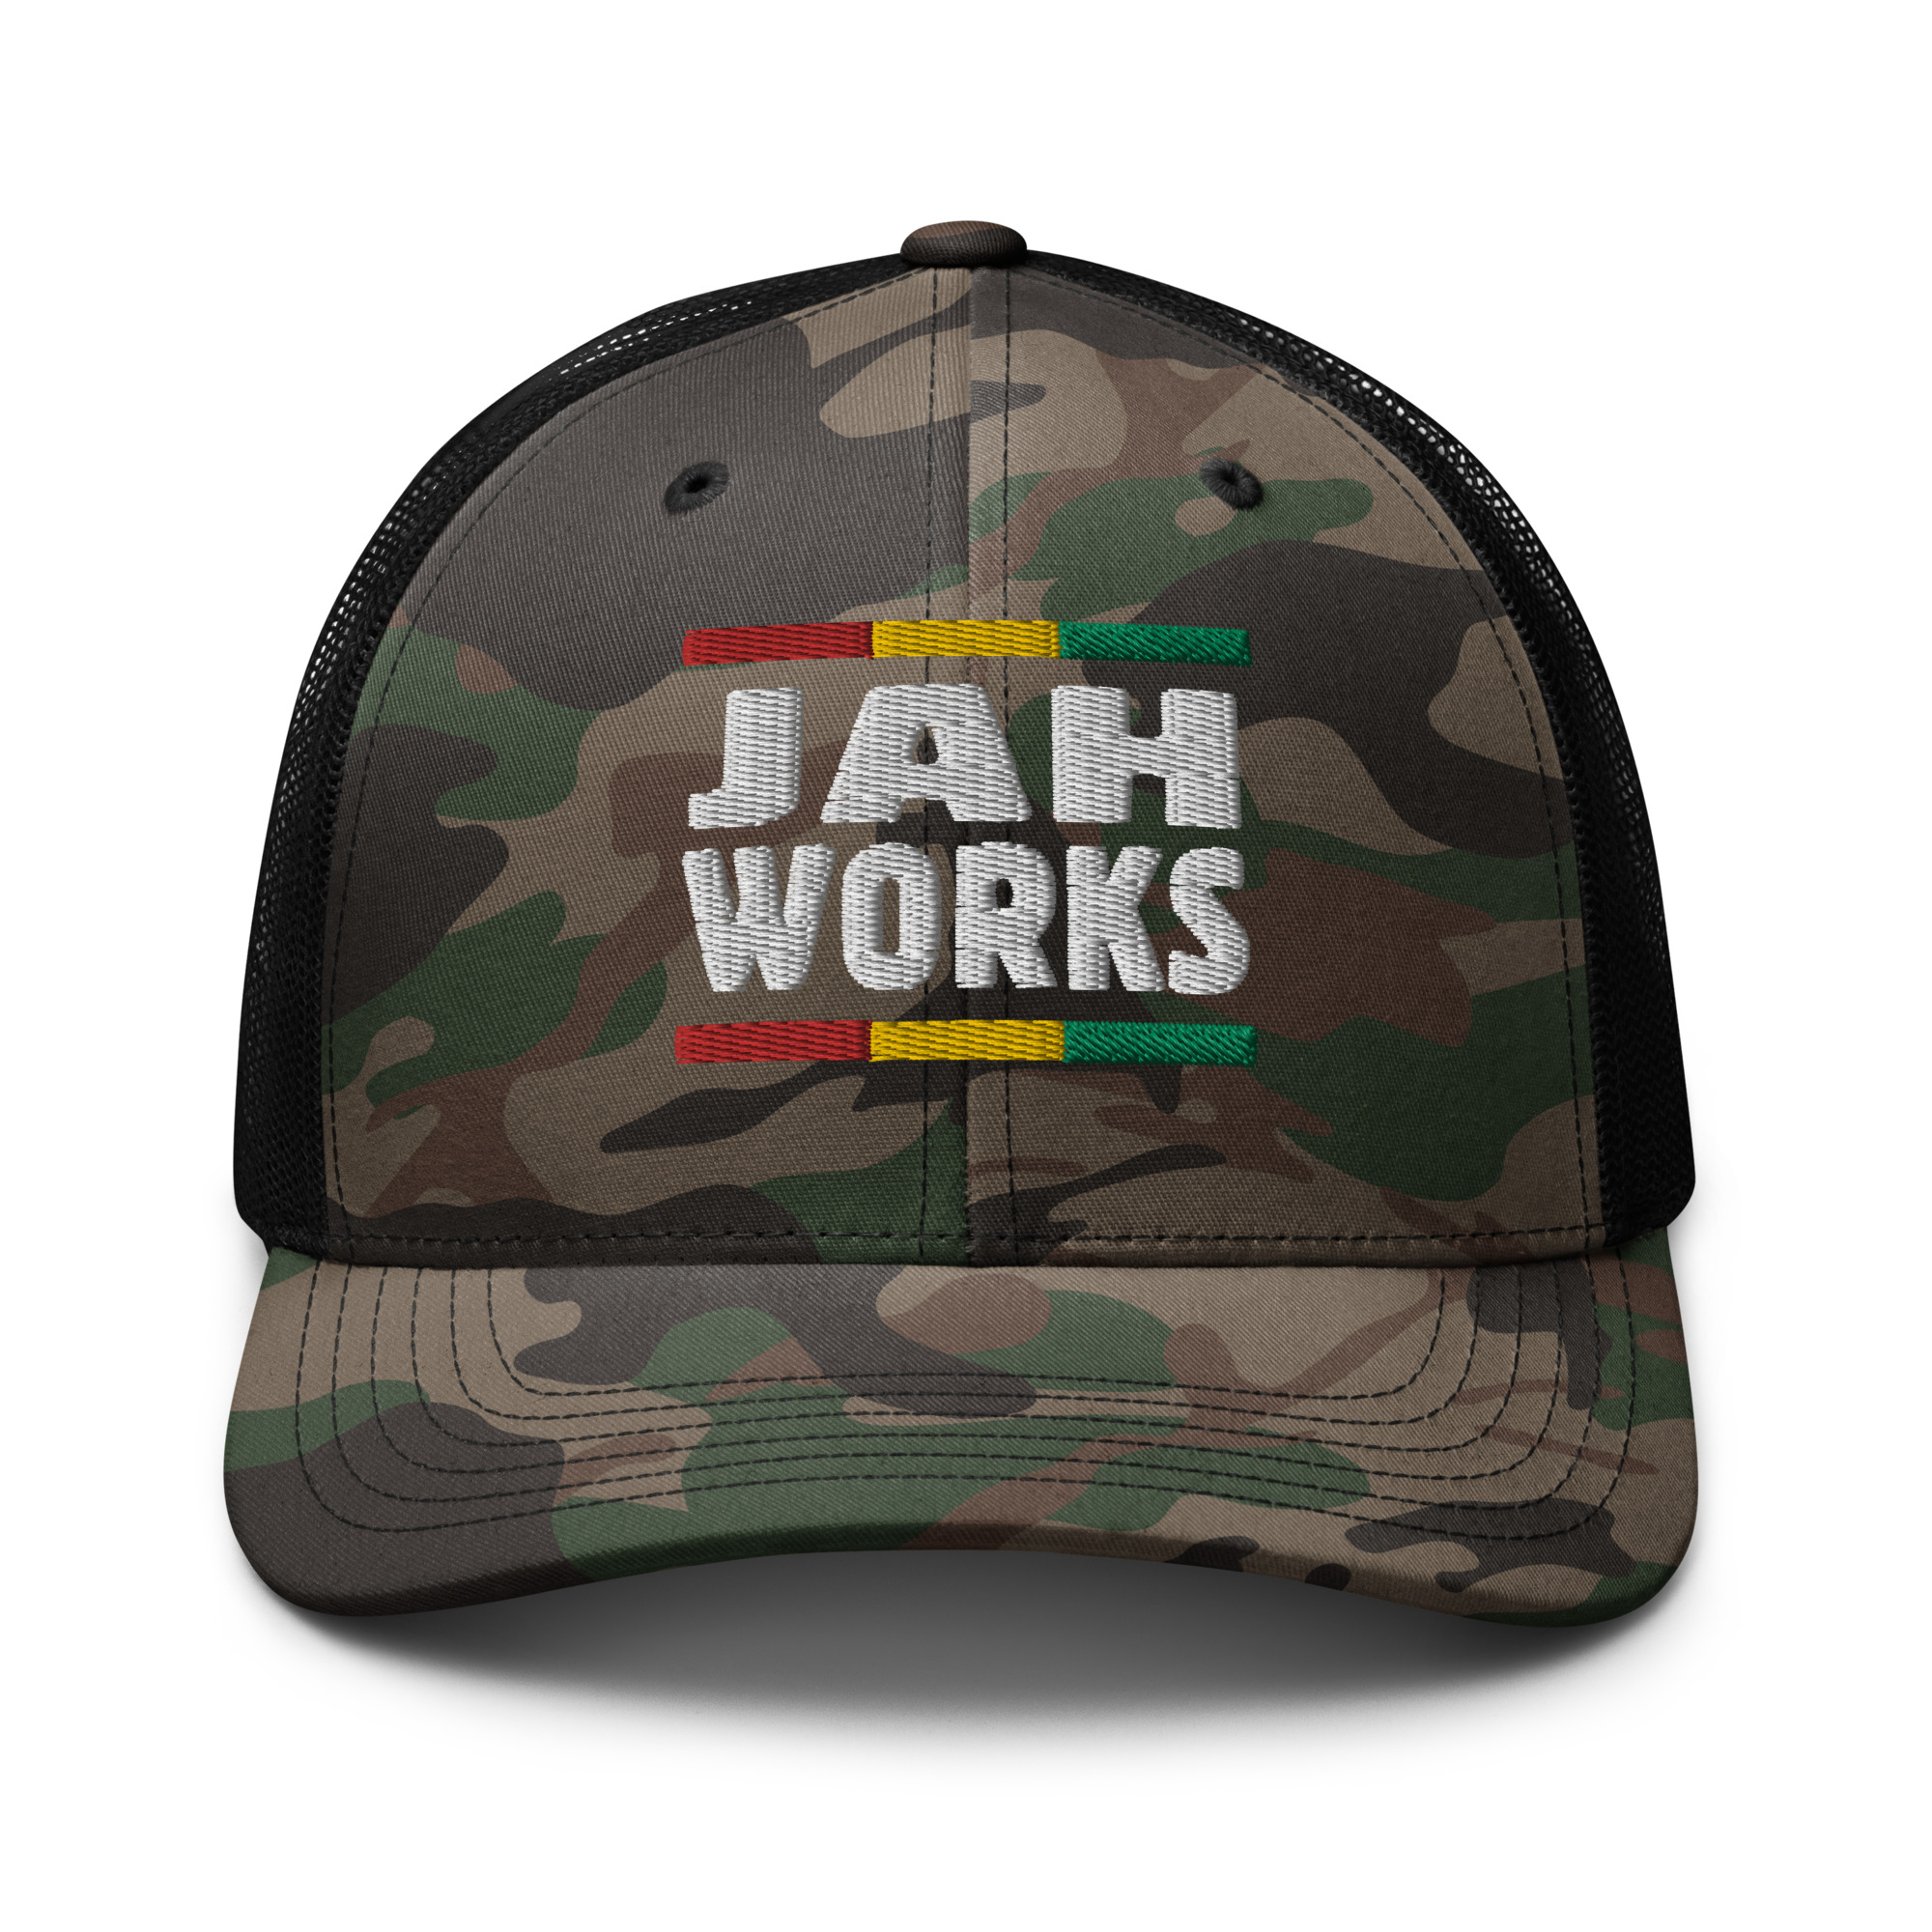 Jah Works Camouflage Trucker Cap